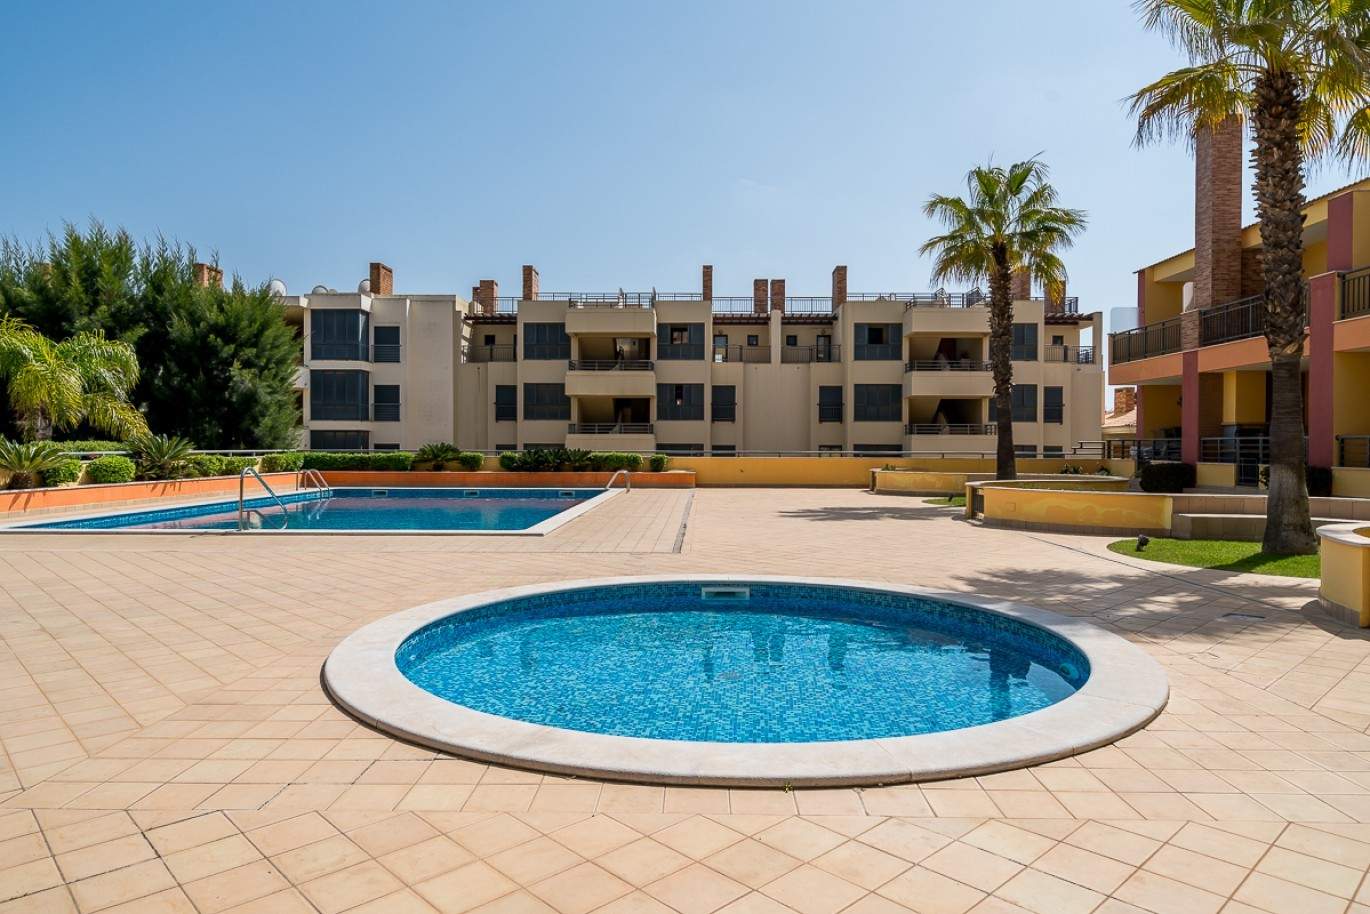 Wohnung zum Verkauf, pool, in der Nähe von Strand und golf, Vilamoura, Algarve, Portugal_78080